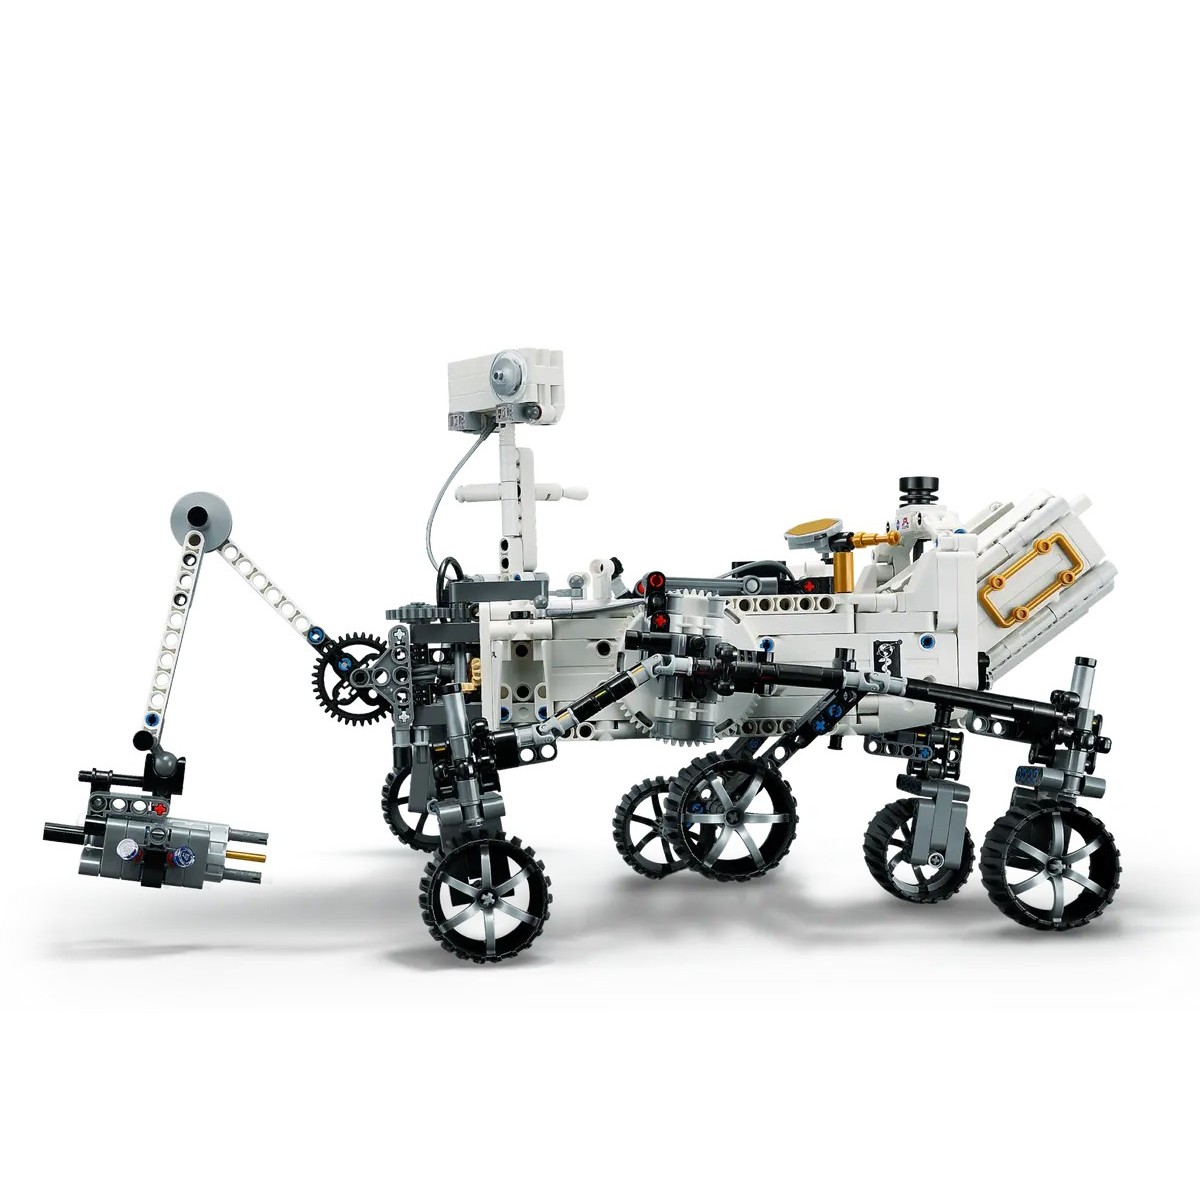 LEGO TECHNIC NASA MARS ROVER PERSEVERANCE /42158/